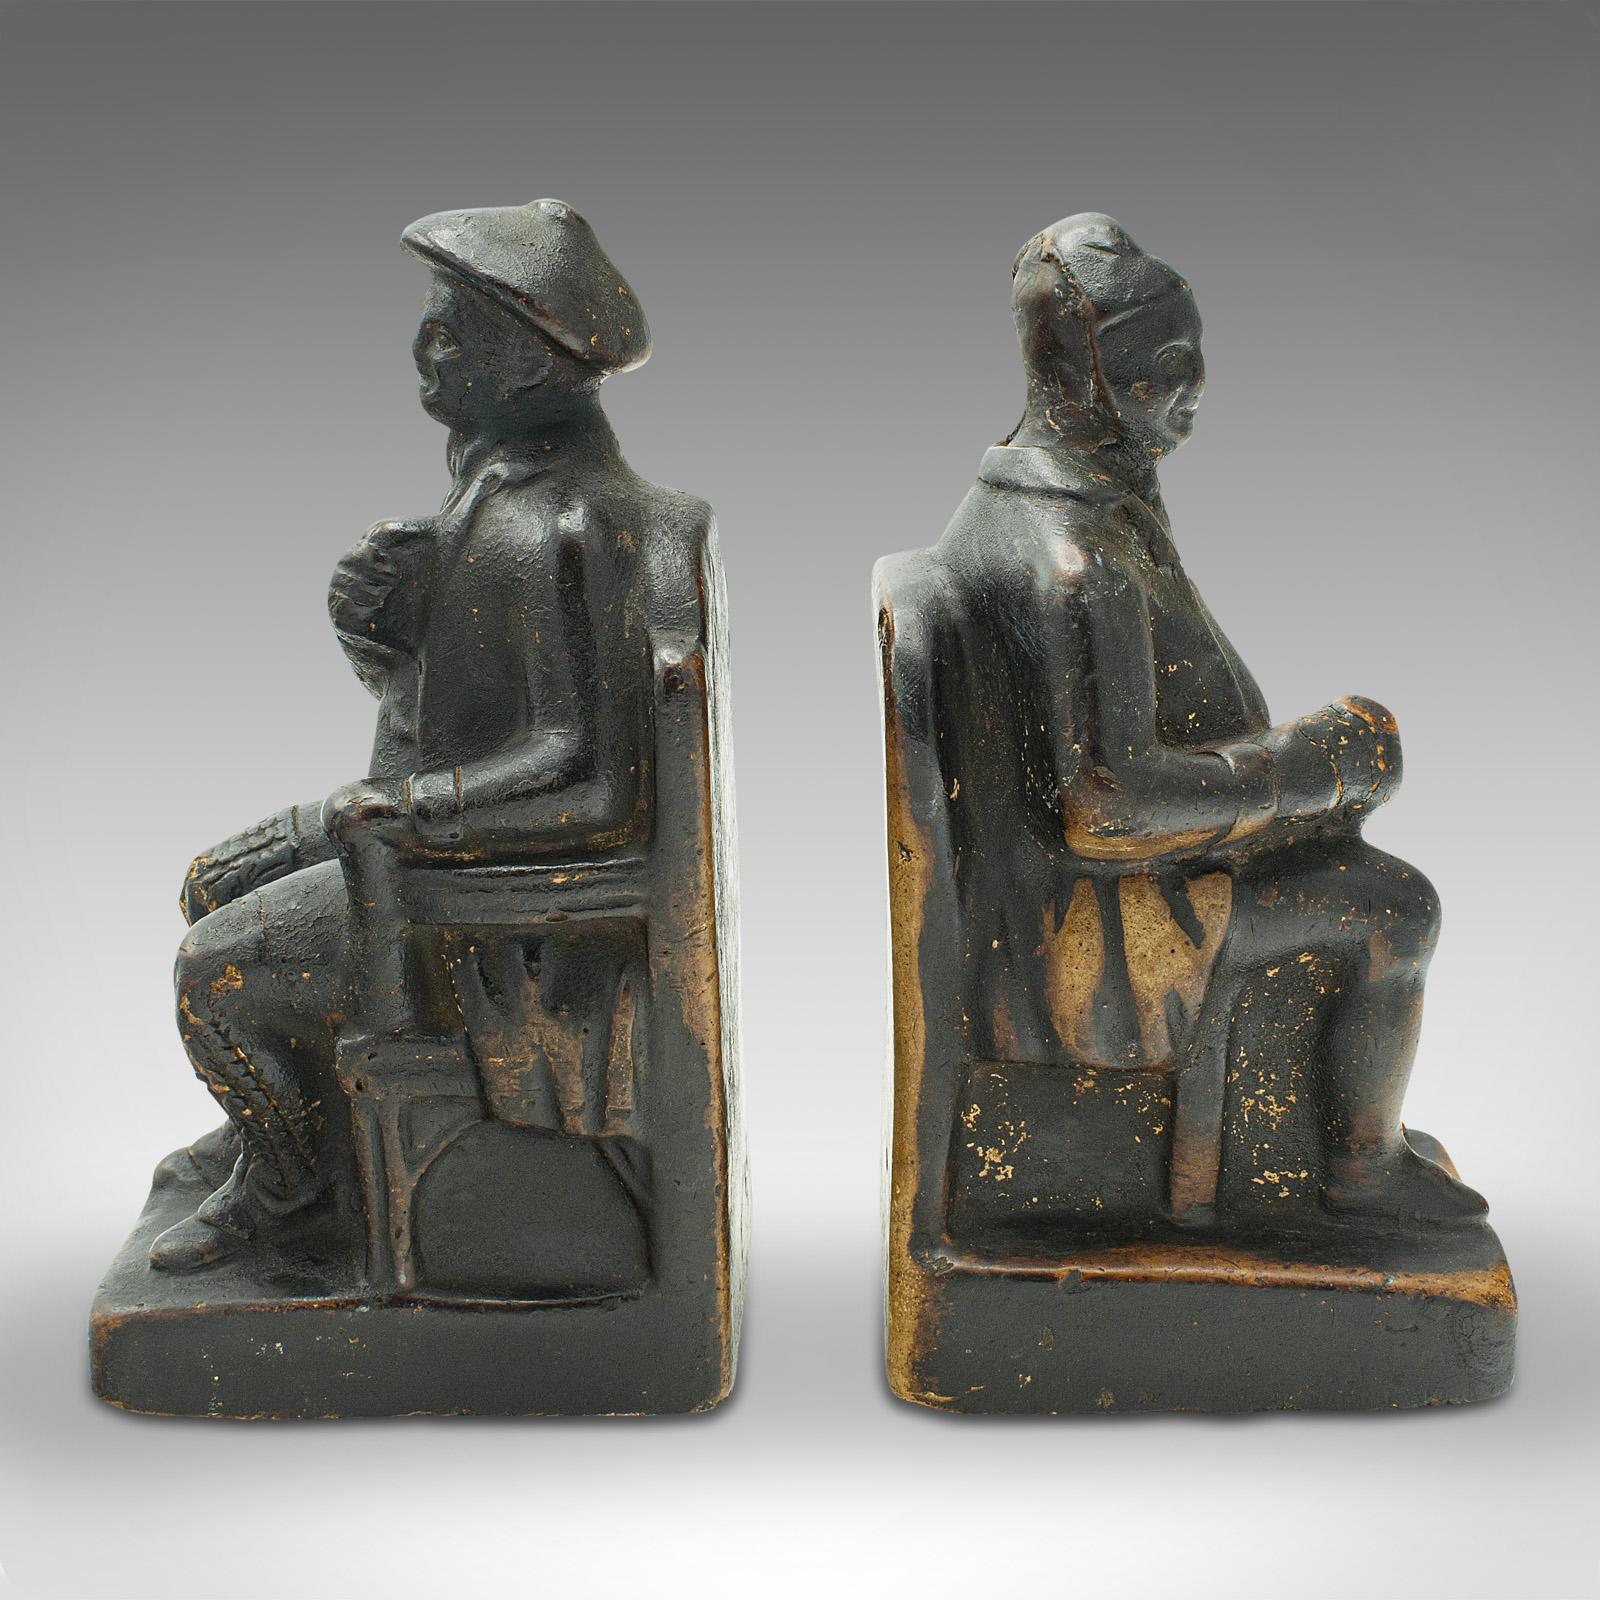 Dies ist ein Paar antiker figurativer Buchstützen. Ein niederländischer, sitzender Mann und eine sitzende Frau aus Gips, aus der spätviktorianischen Zeit, um 1900.

Ansprechendes Beispiel holländischer Handwerkskunst, mit heiterem